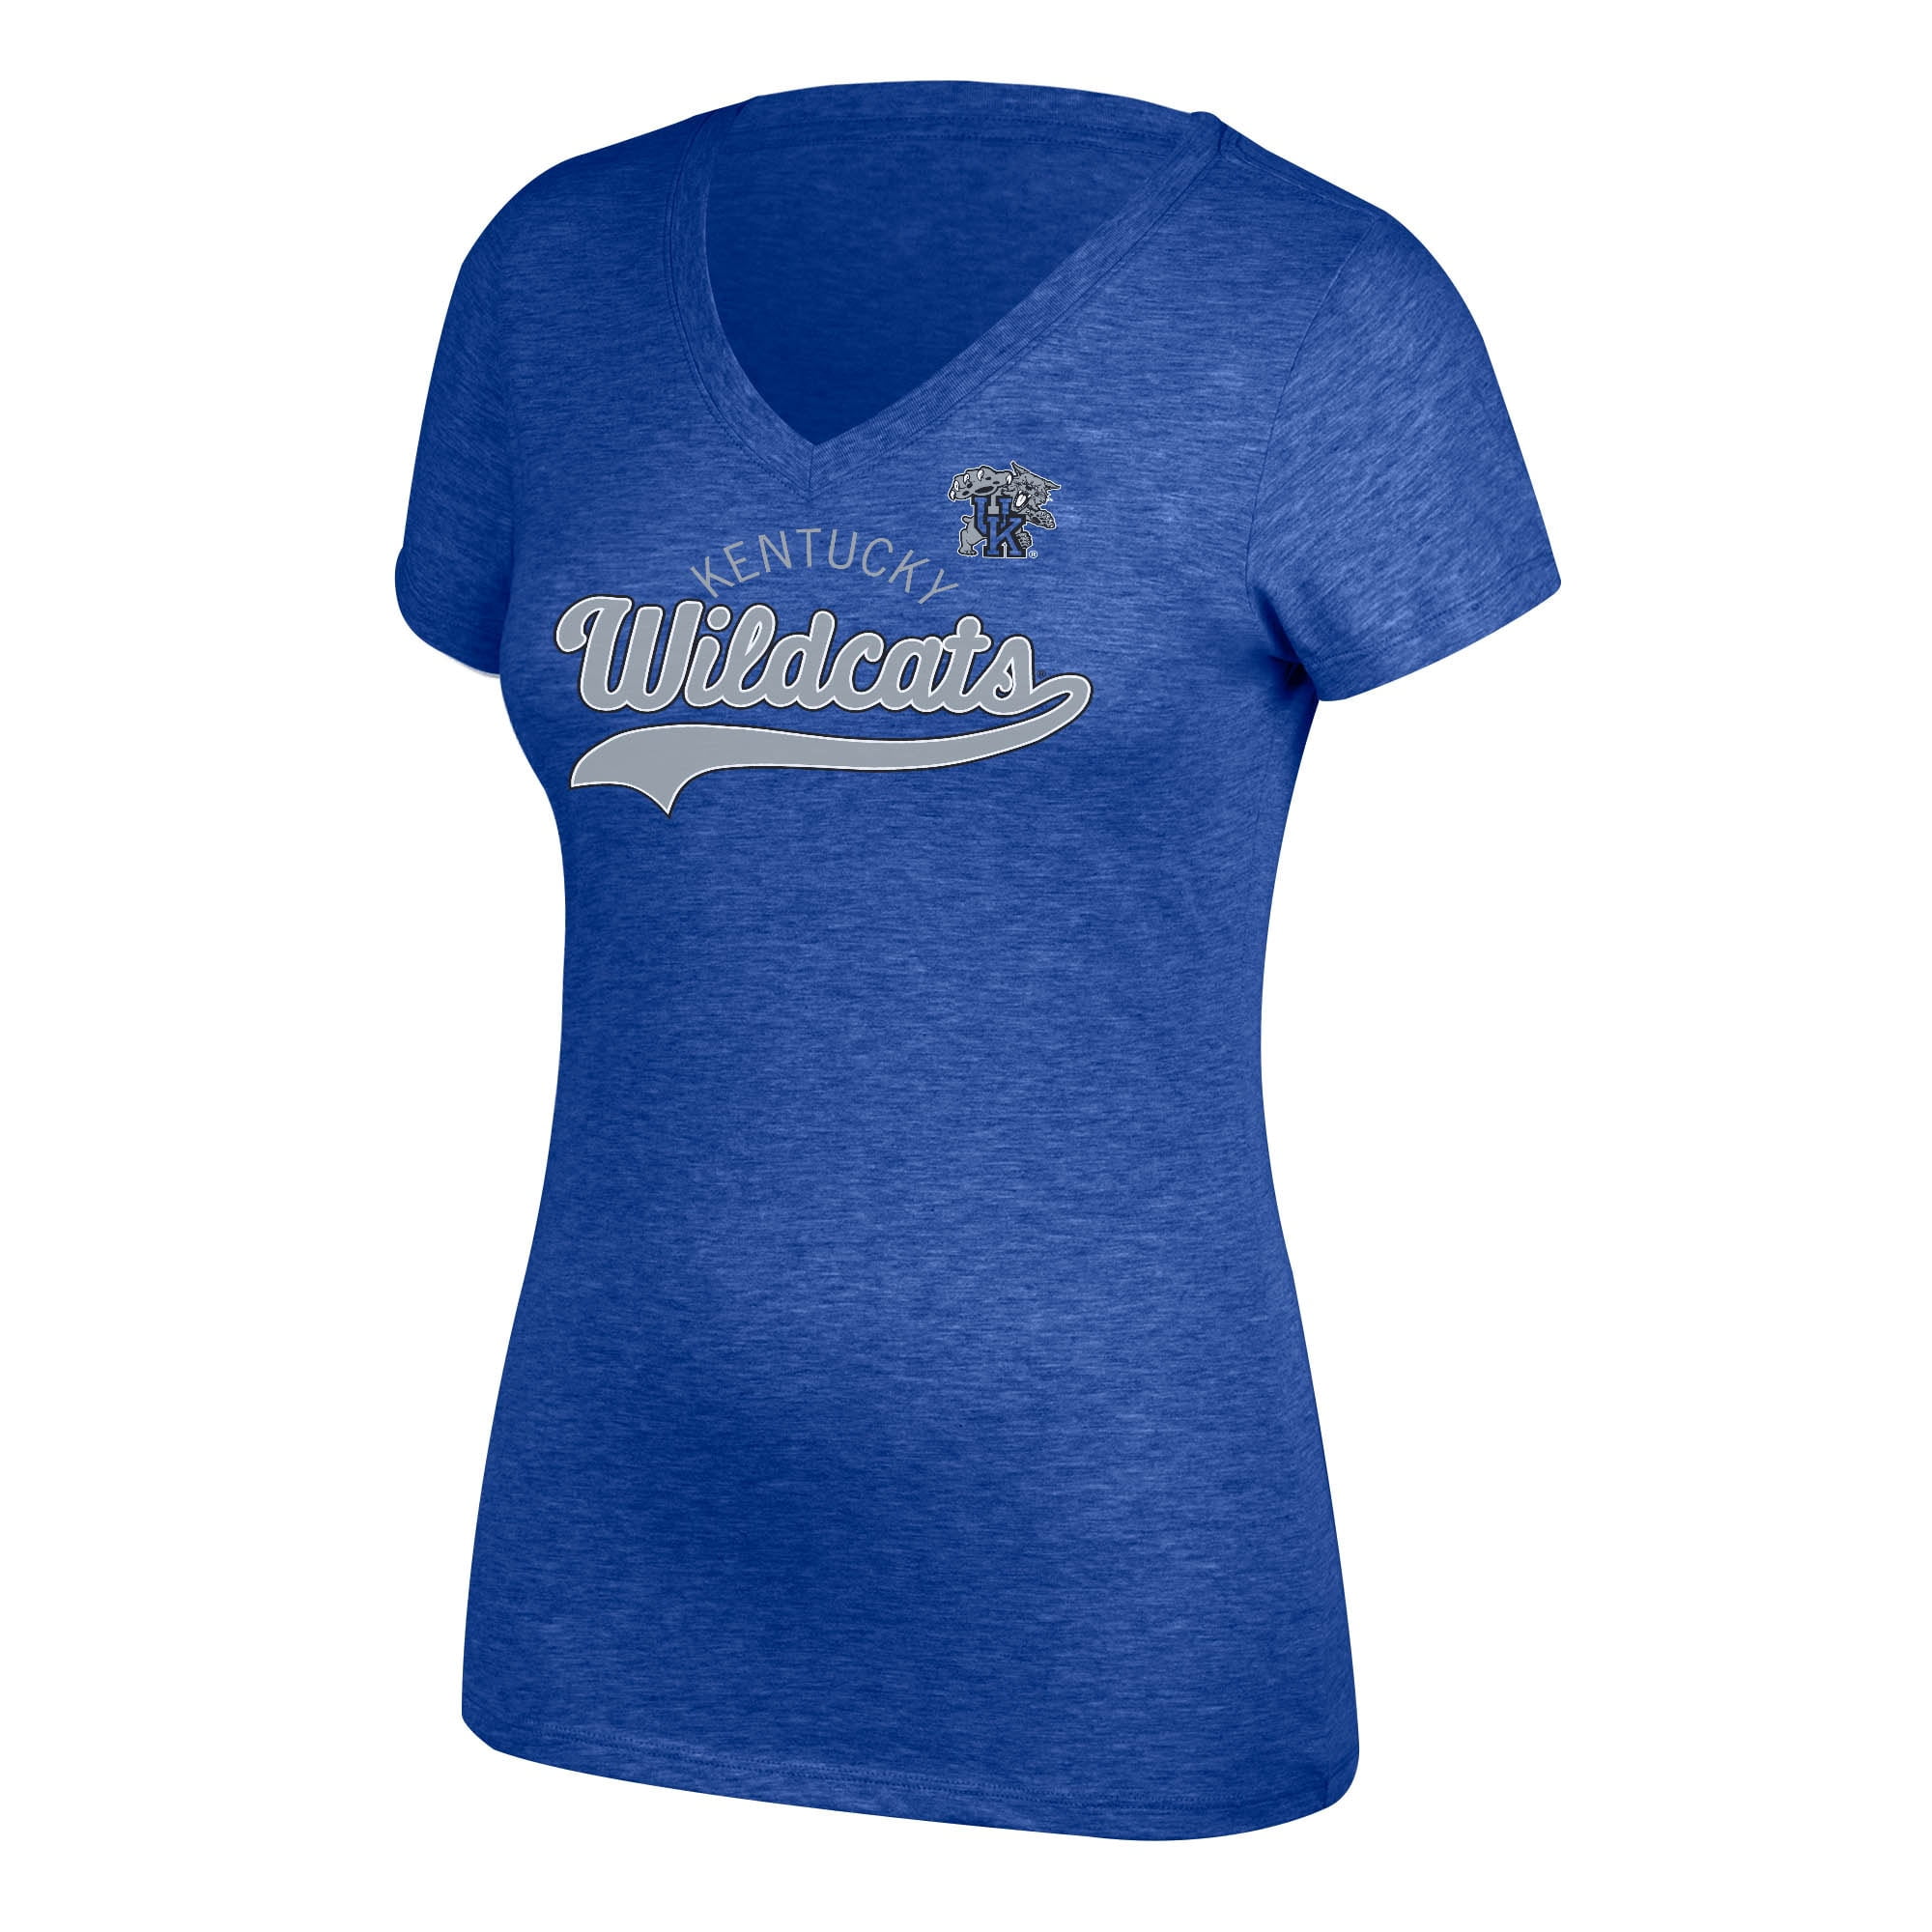 Women's Royal Kentucky Wildcats Script V-Neck T-Shirt - Walmart.com ...